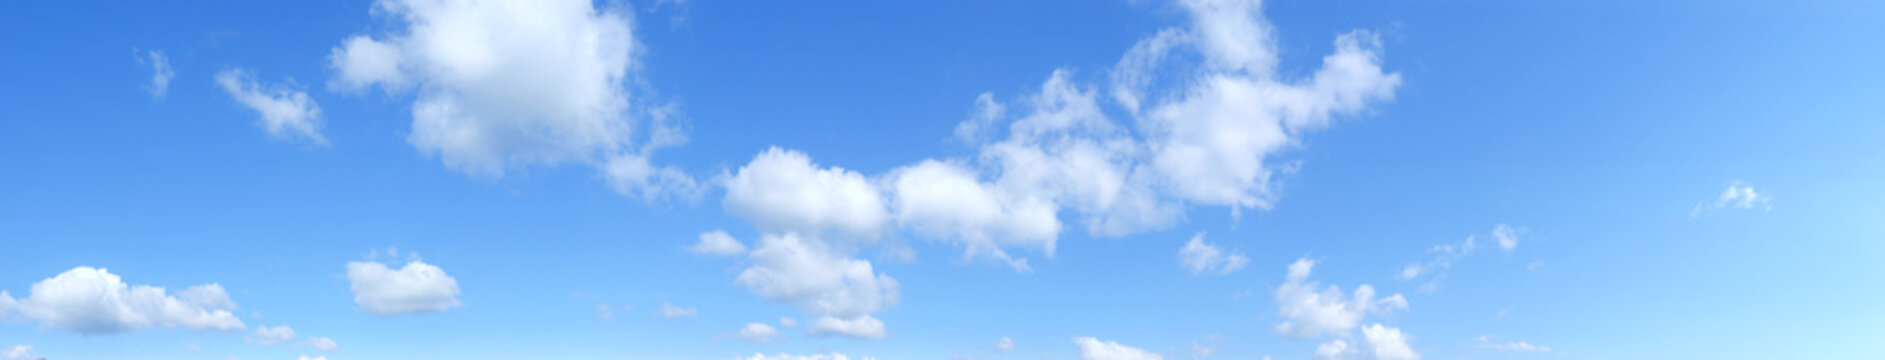 Panoramica di un cielo con nuvole